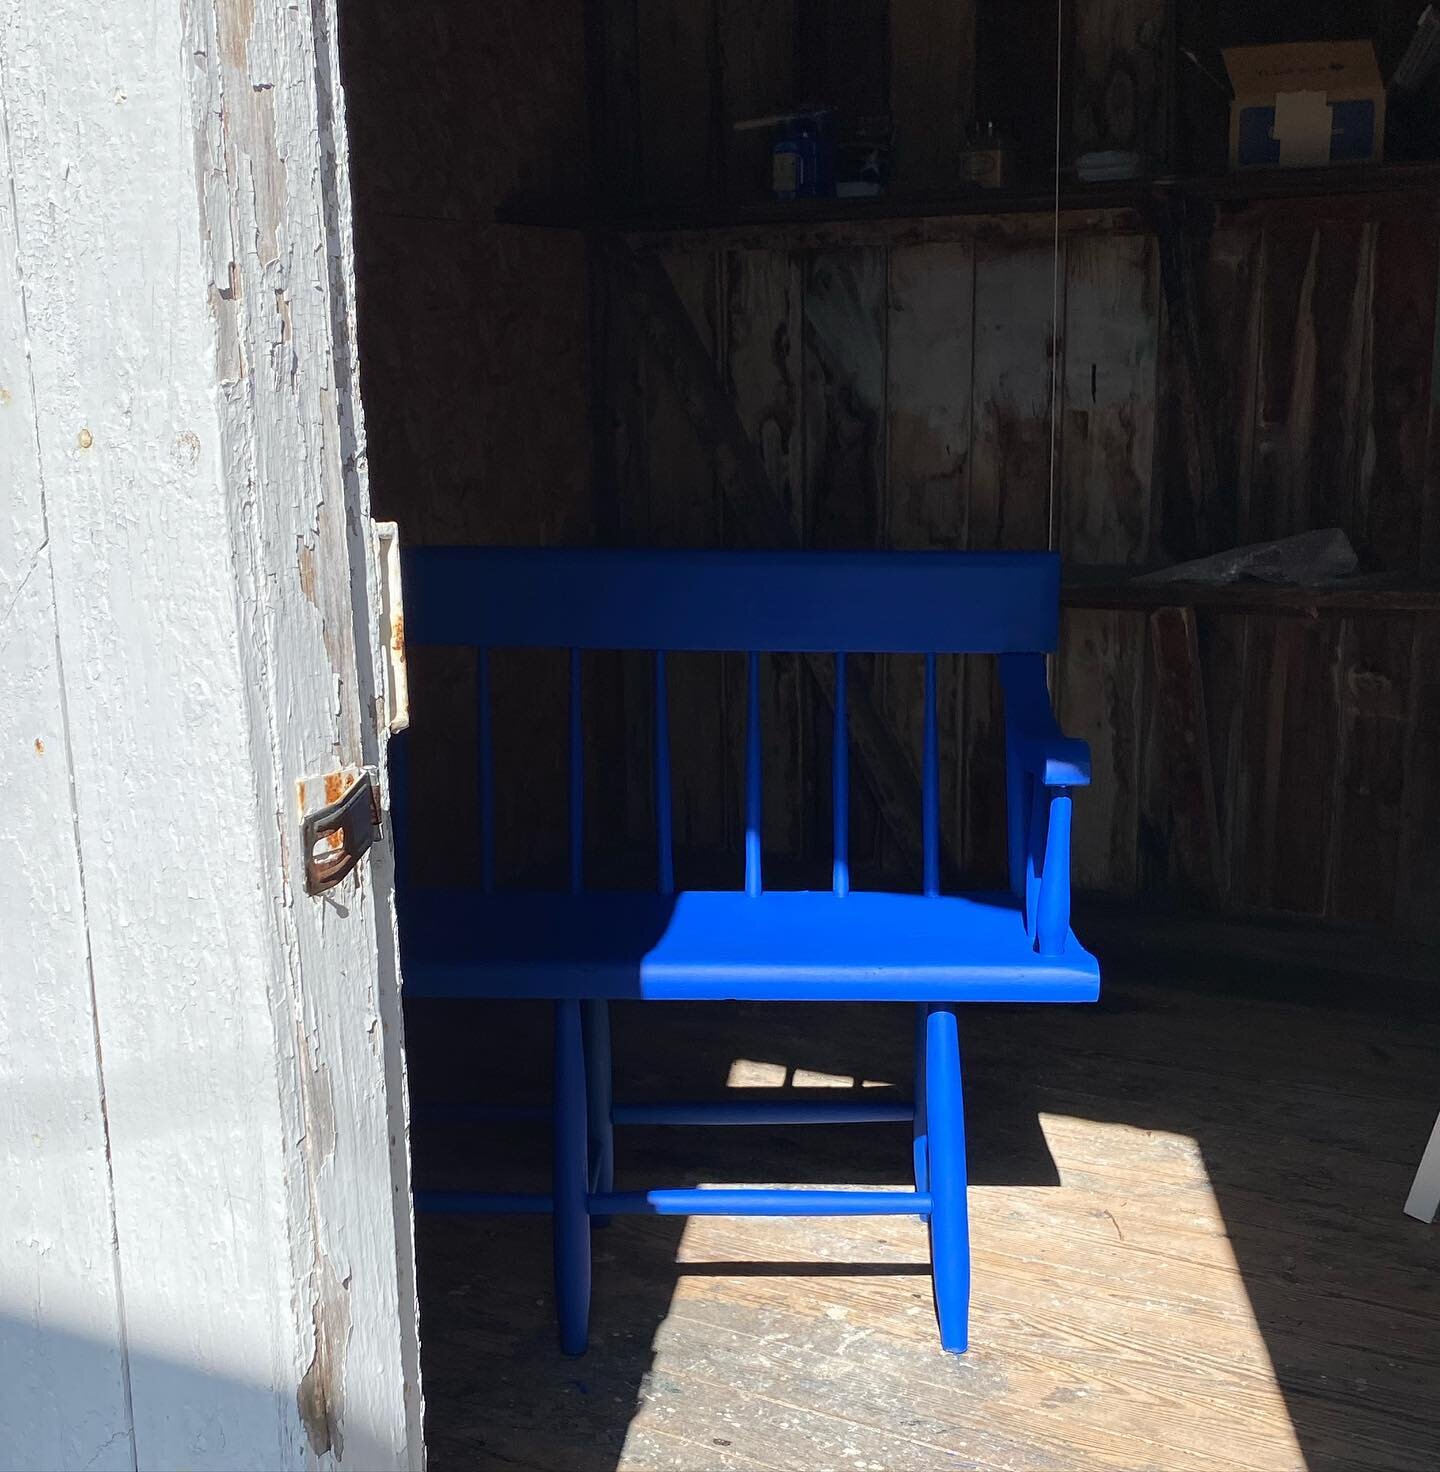 @dixiebellepaint Gorgeous Cobalt Blue! #paintedfurniture #cottagecore #thesecretarycottage #paintedbench #design #farmhouse